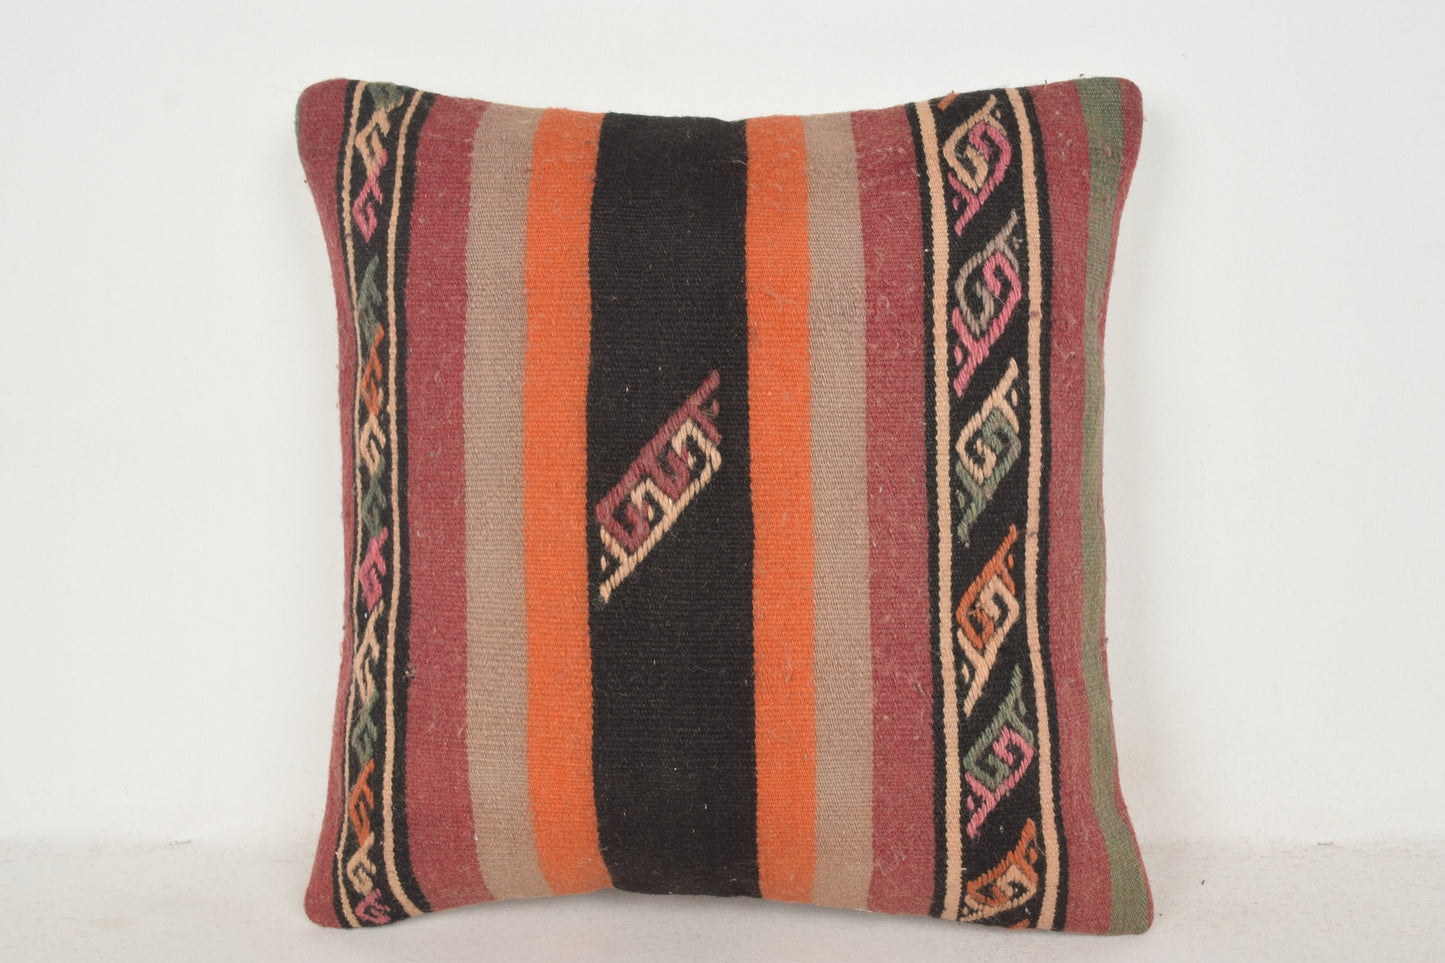 Coral Black Orange Stripe Kilim Rug Zara Home Pillow C00464 18x18 " - 45x45 cm.